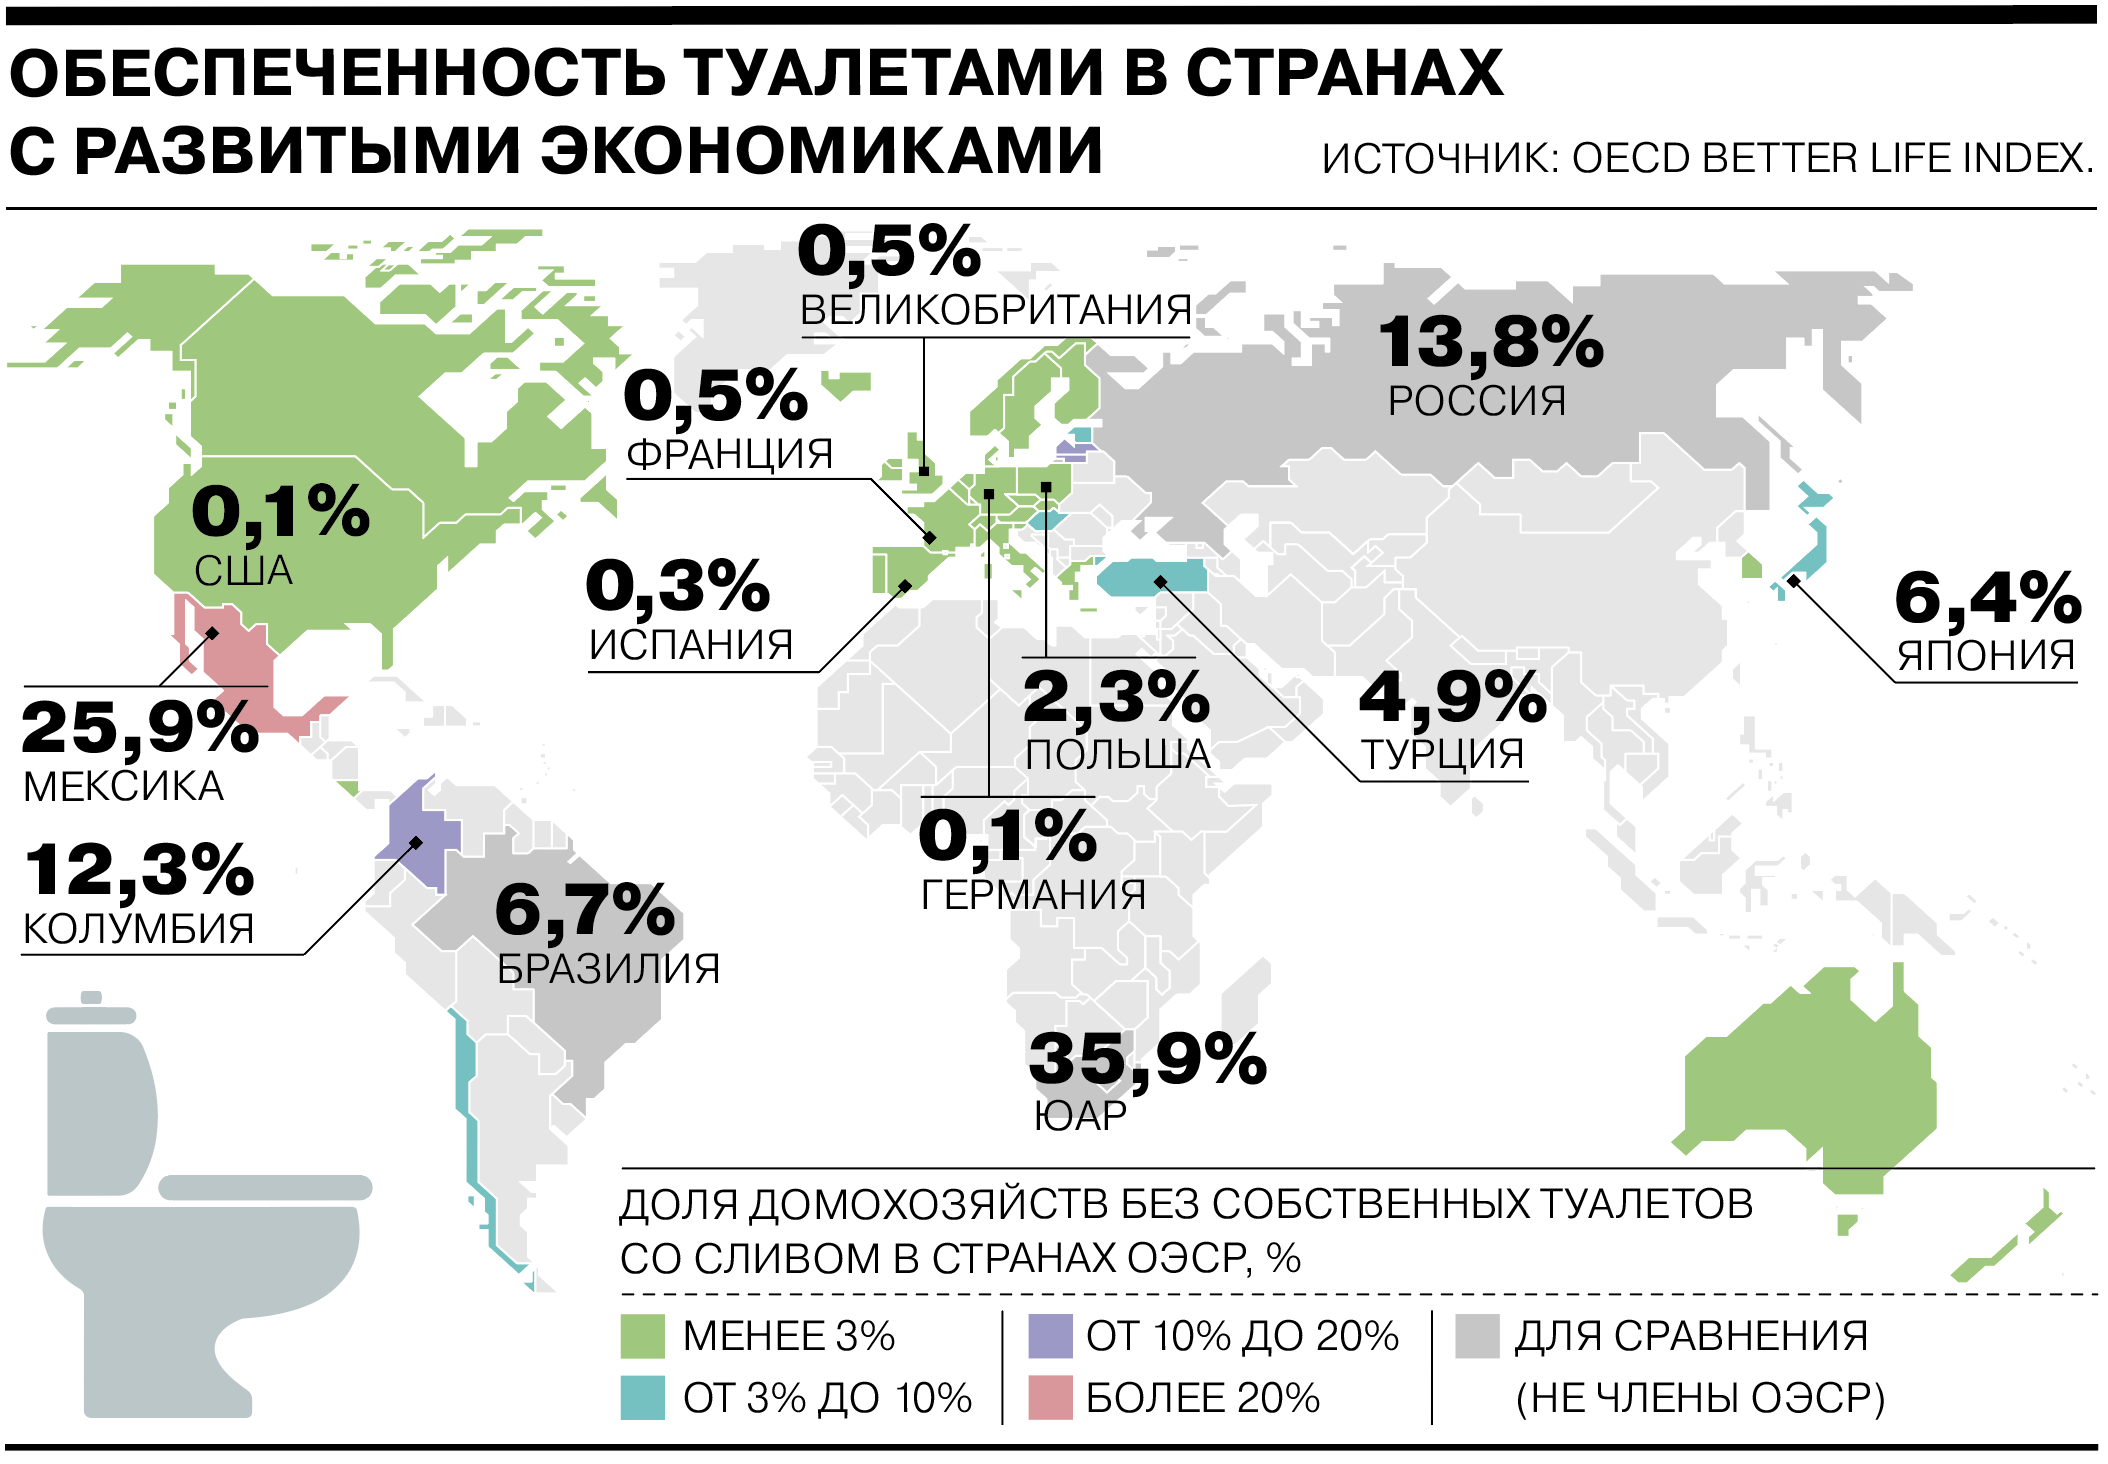 Сколько людей в россии сейчас 2024. Обеспеченность туалетами в мире. Страны с развивающейся экономикой. Туалеты в разных странах.